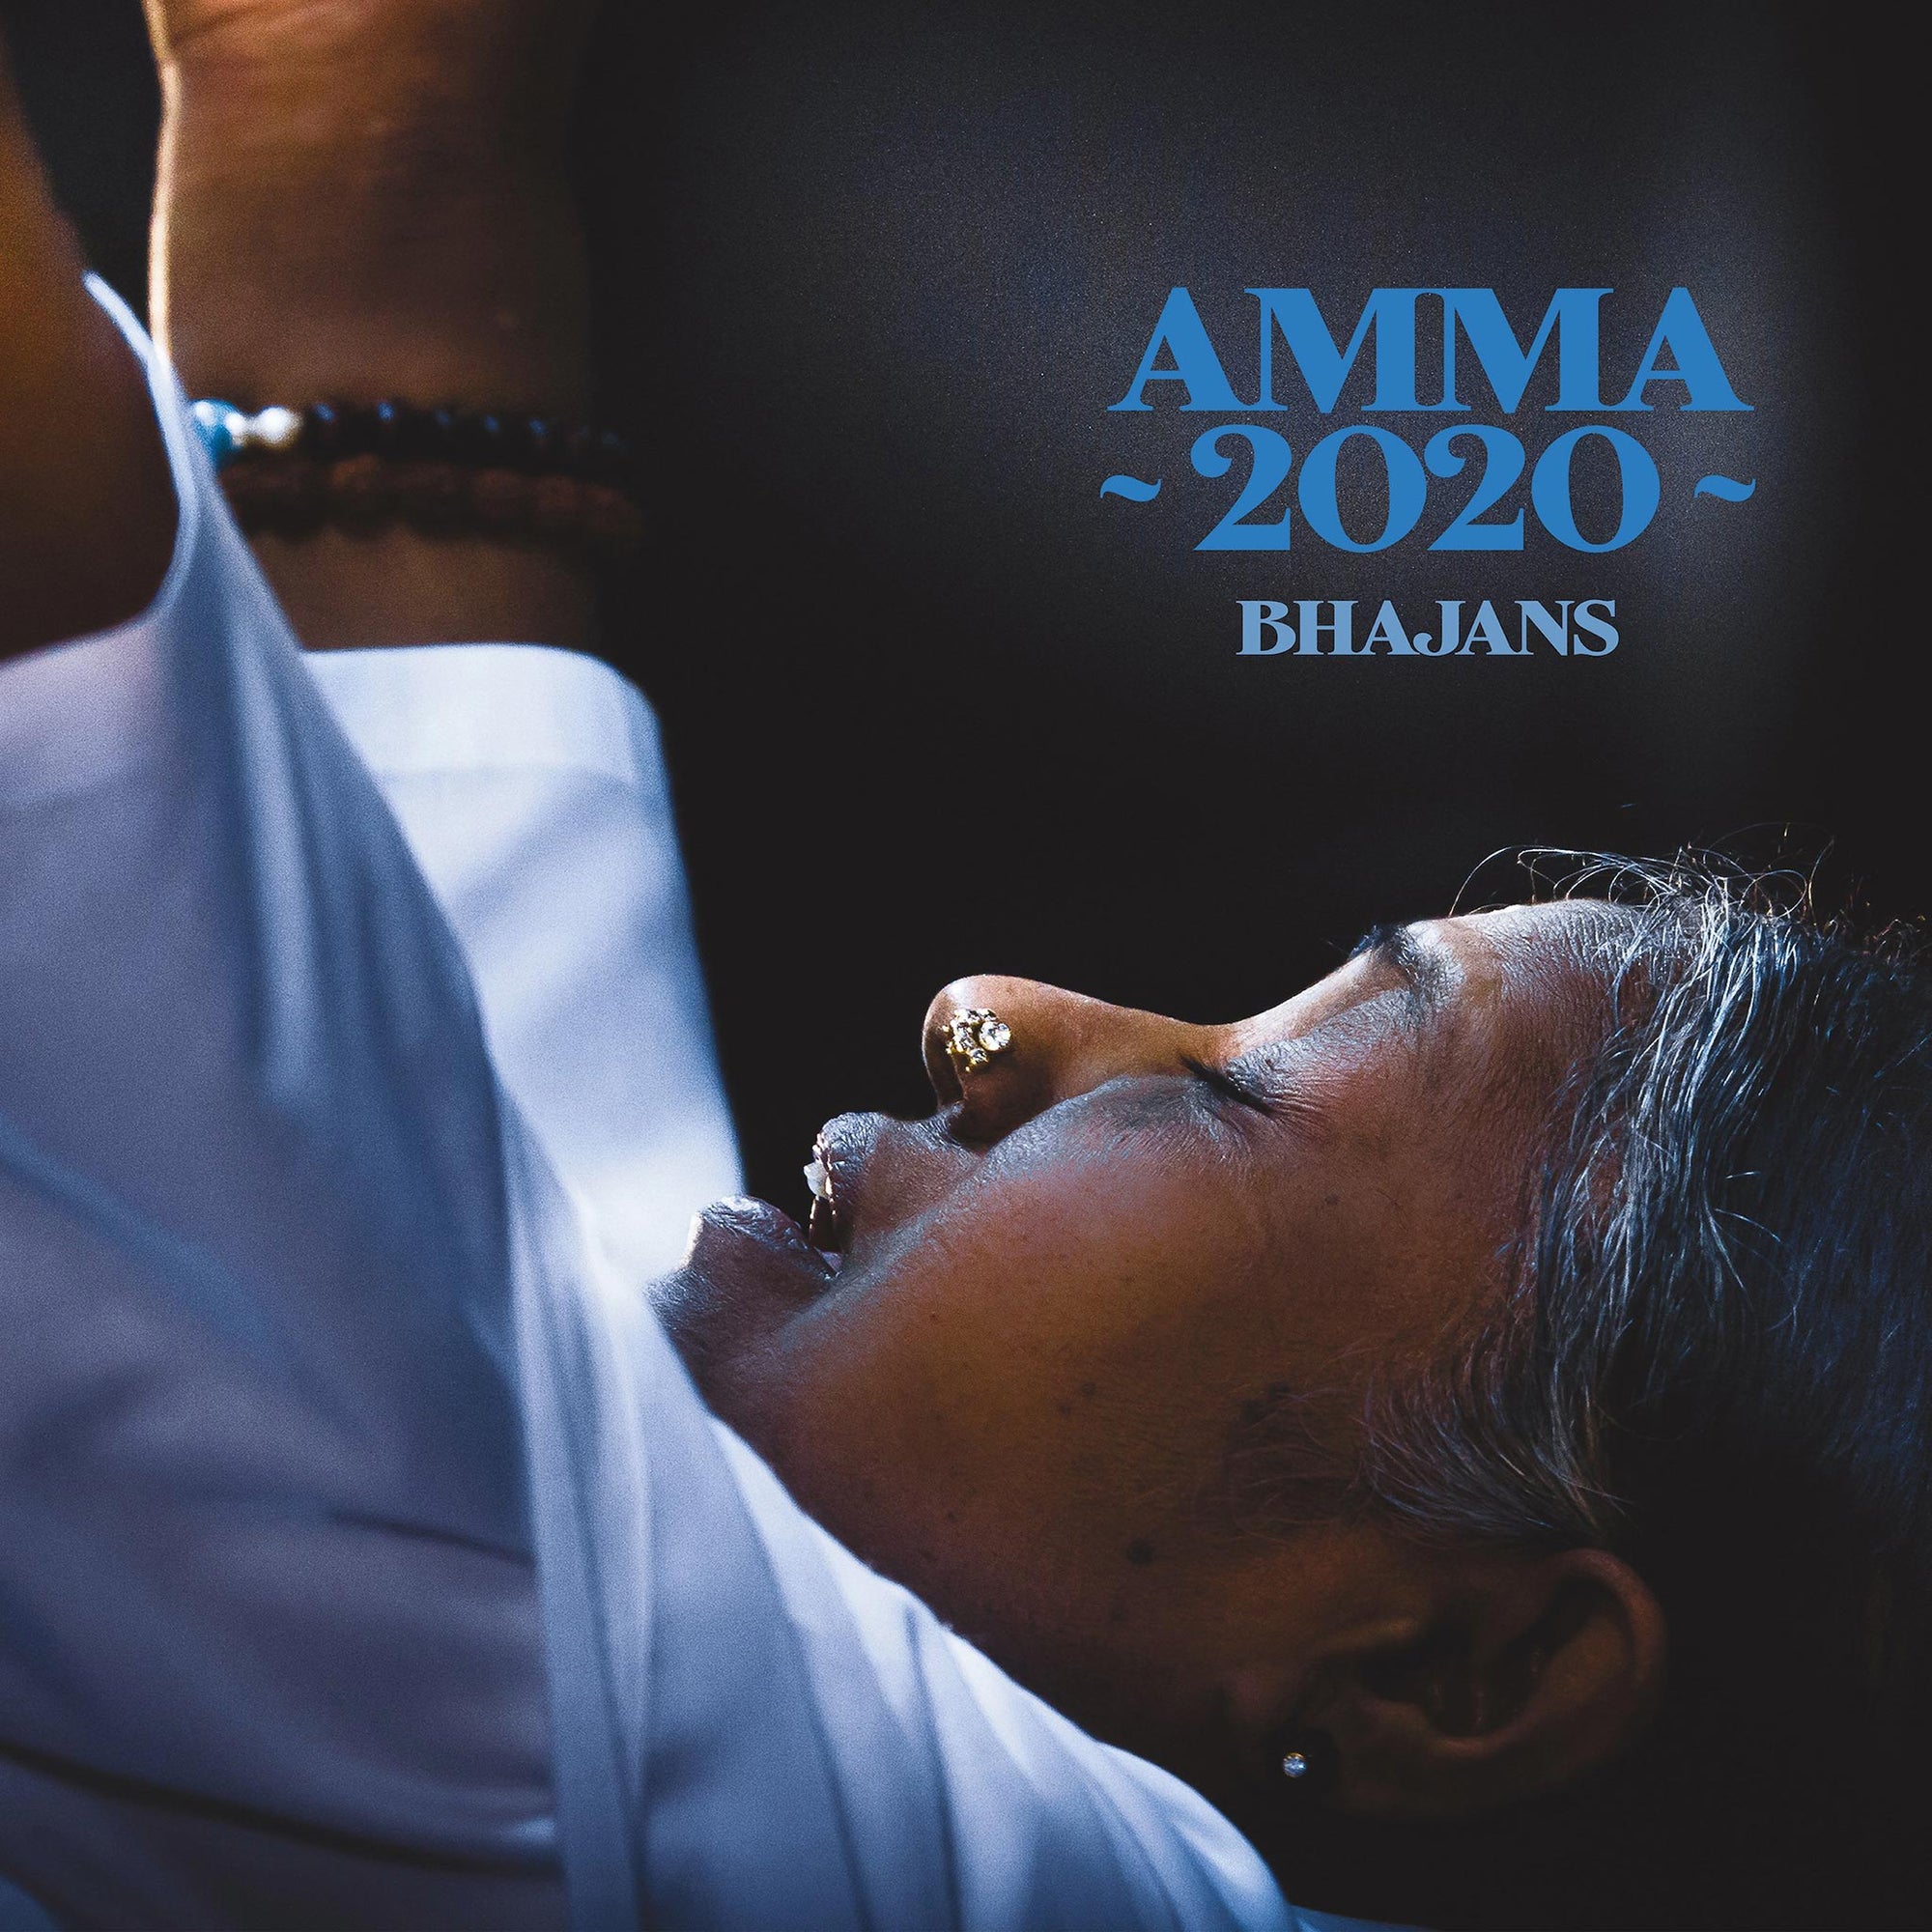 Amma 2020 Bhajans - BASQUE (Digital)